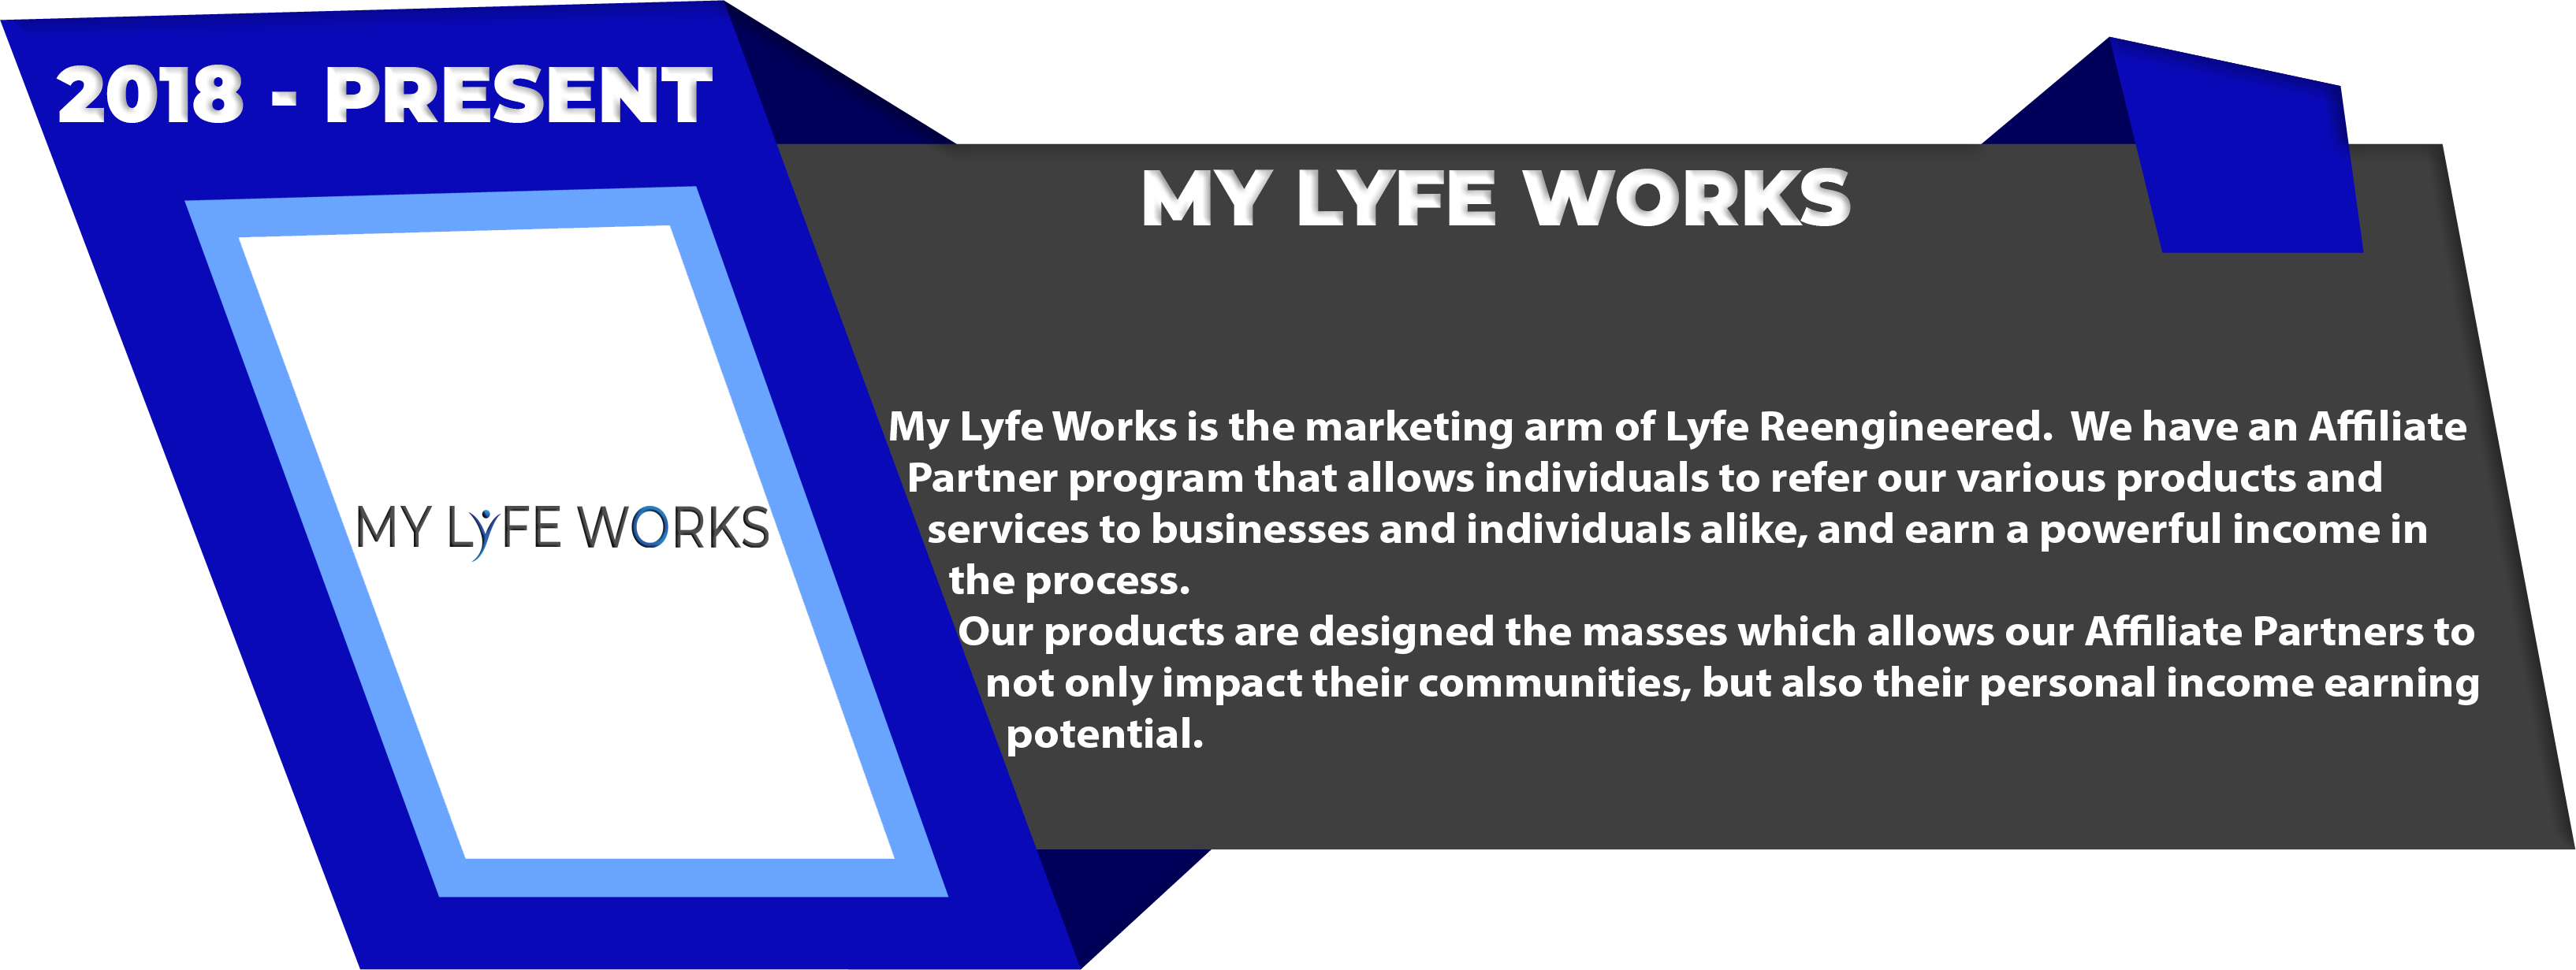 My LYfe Works 2018